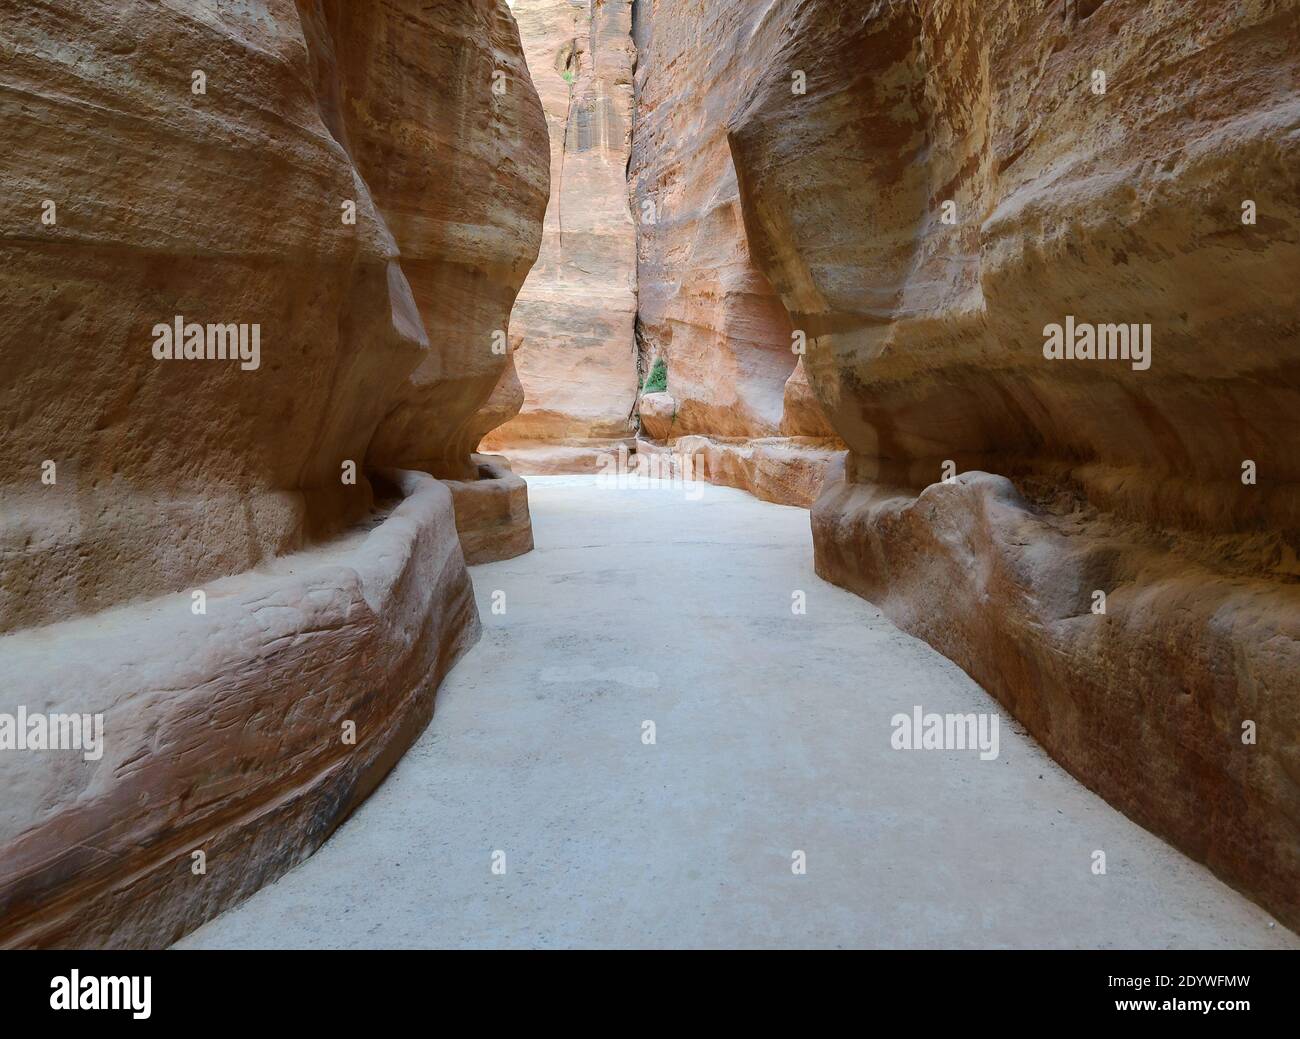 Petra Zufahrtsroute bekannt als Siq mit Wasserkanälen für die Wasserversorgung der Nabatäer. Antiker Haupteingang von Petra in Jordanien, mit nabateischen Wasserpfeifen. Stockfoto